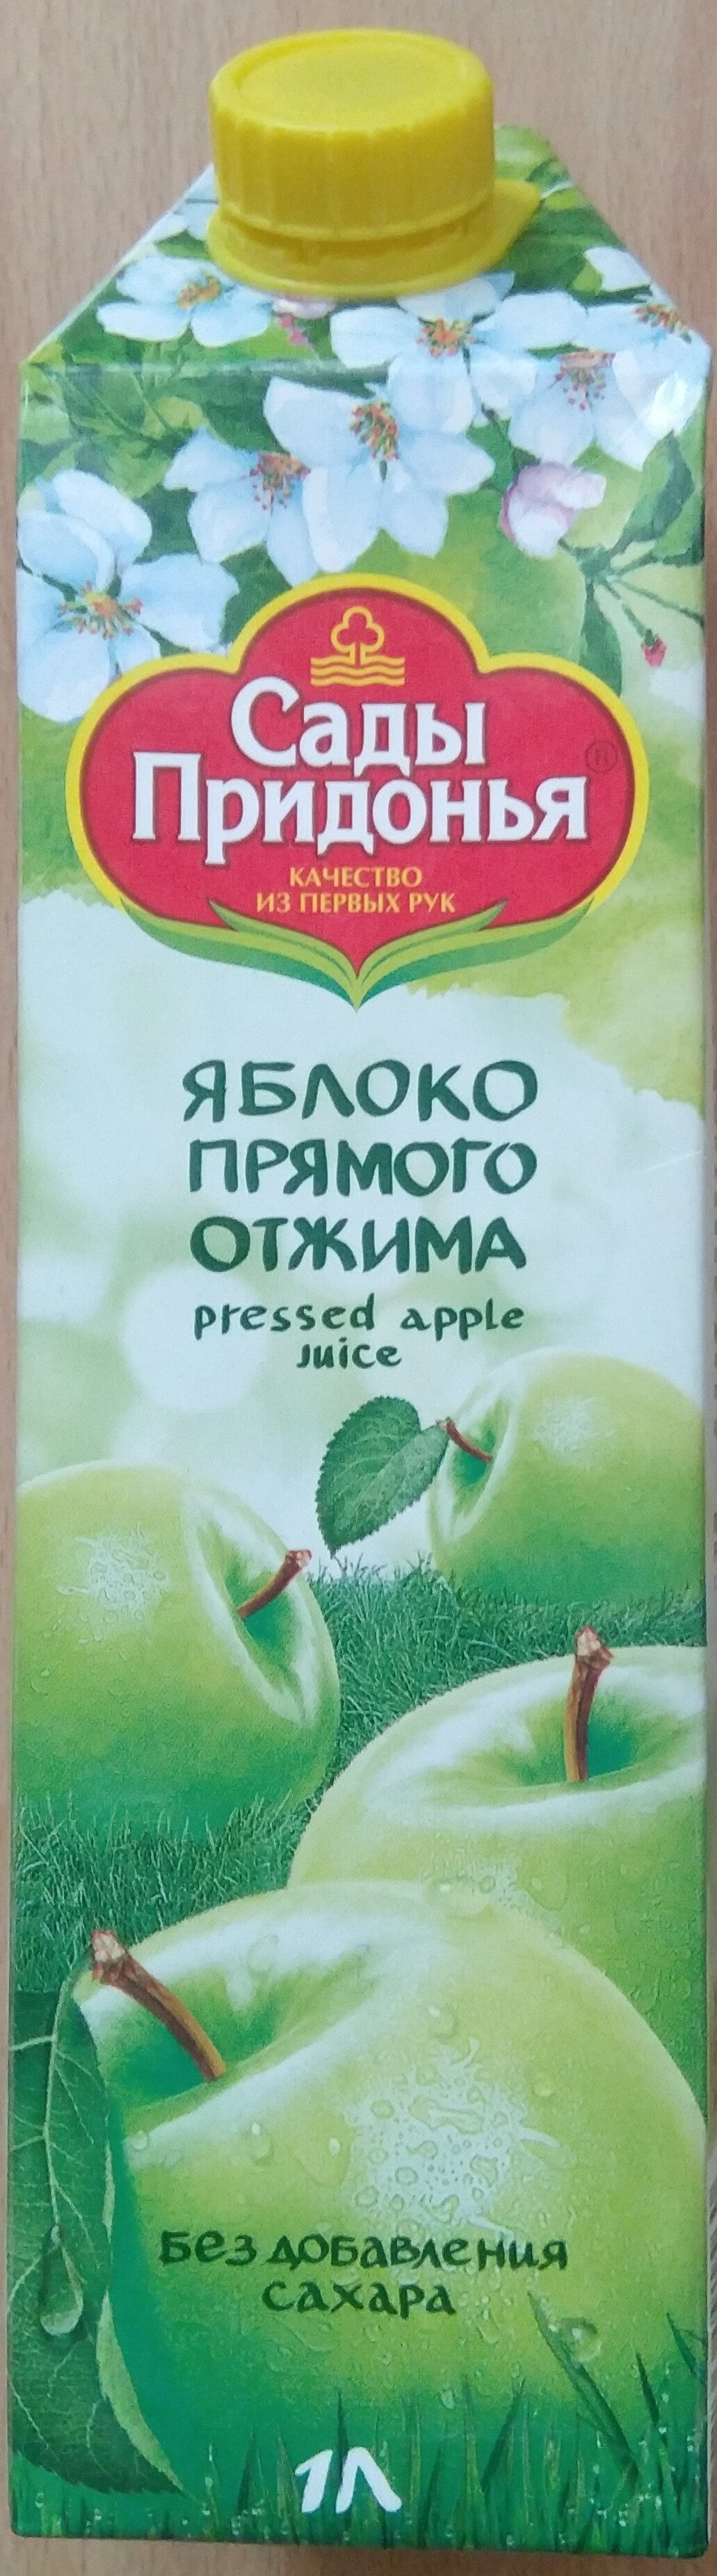 Сок яблочный прямого отжима - Product - ru